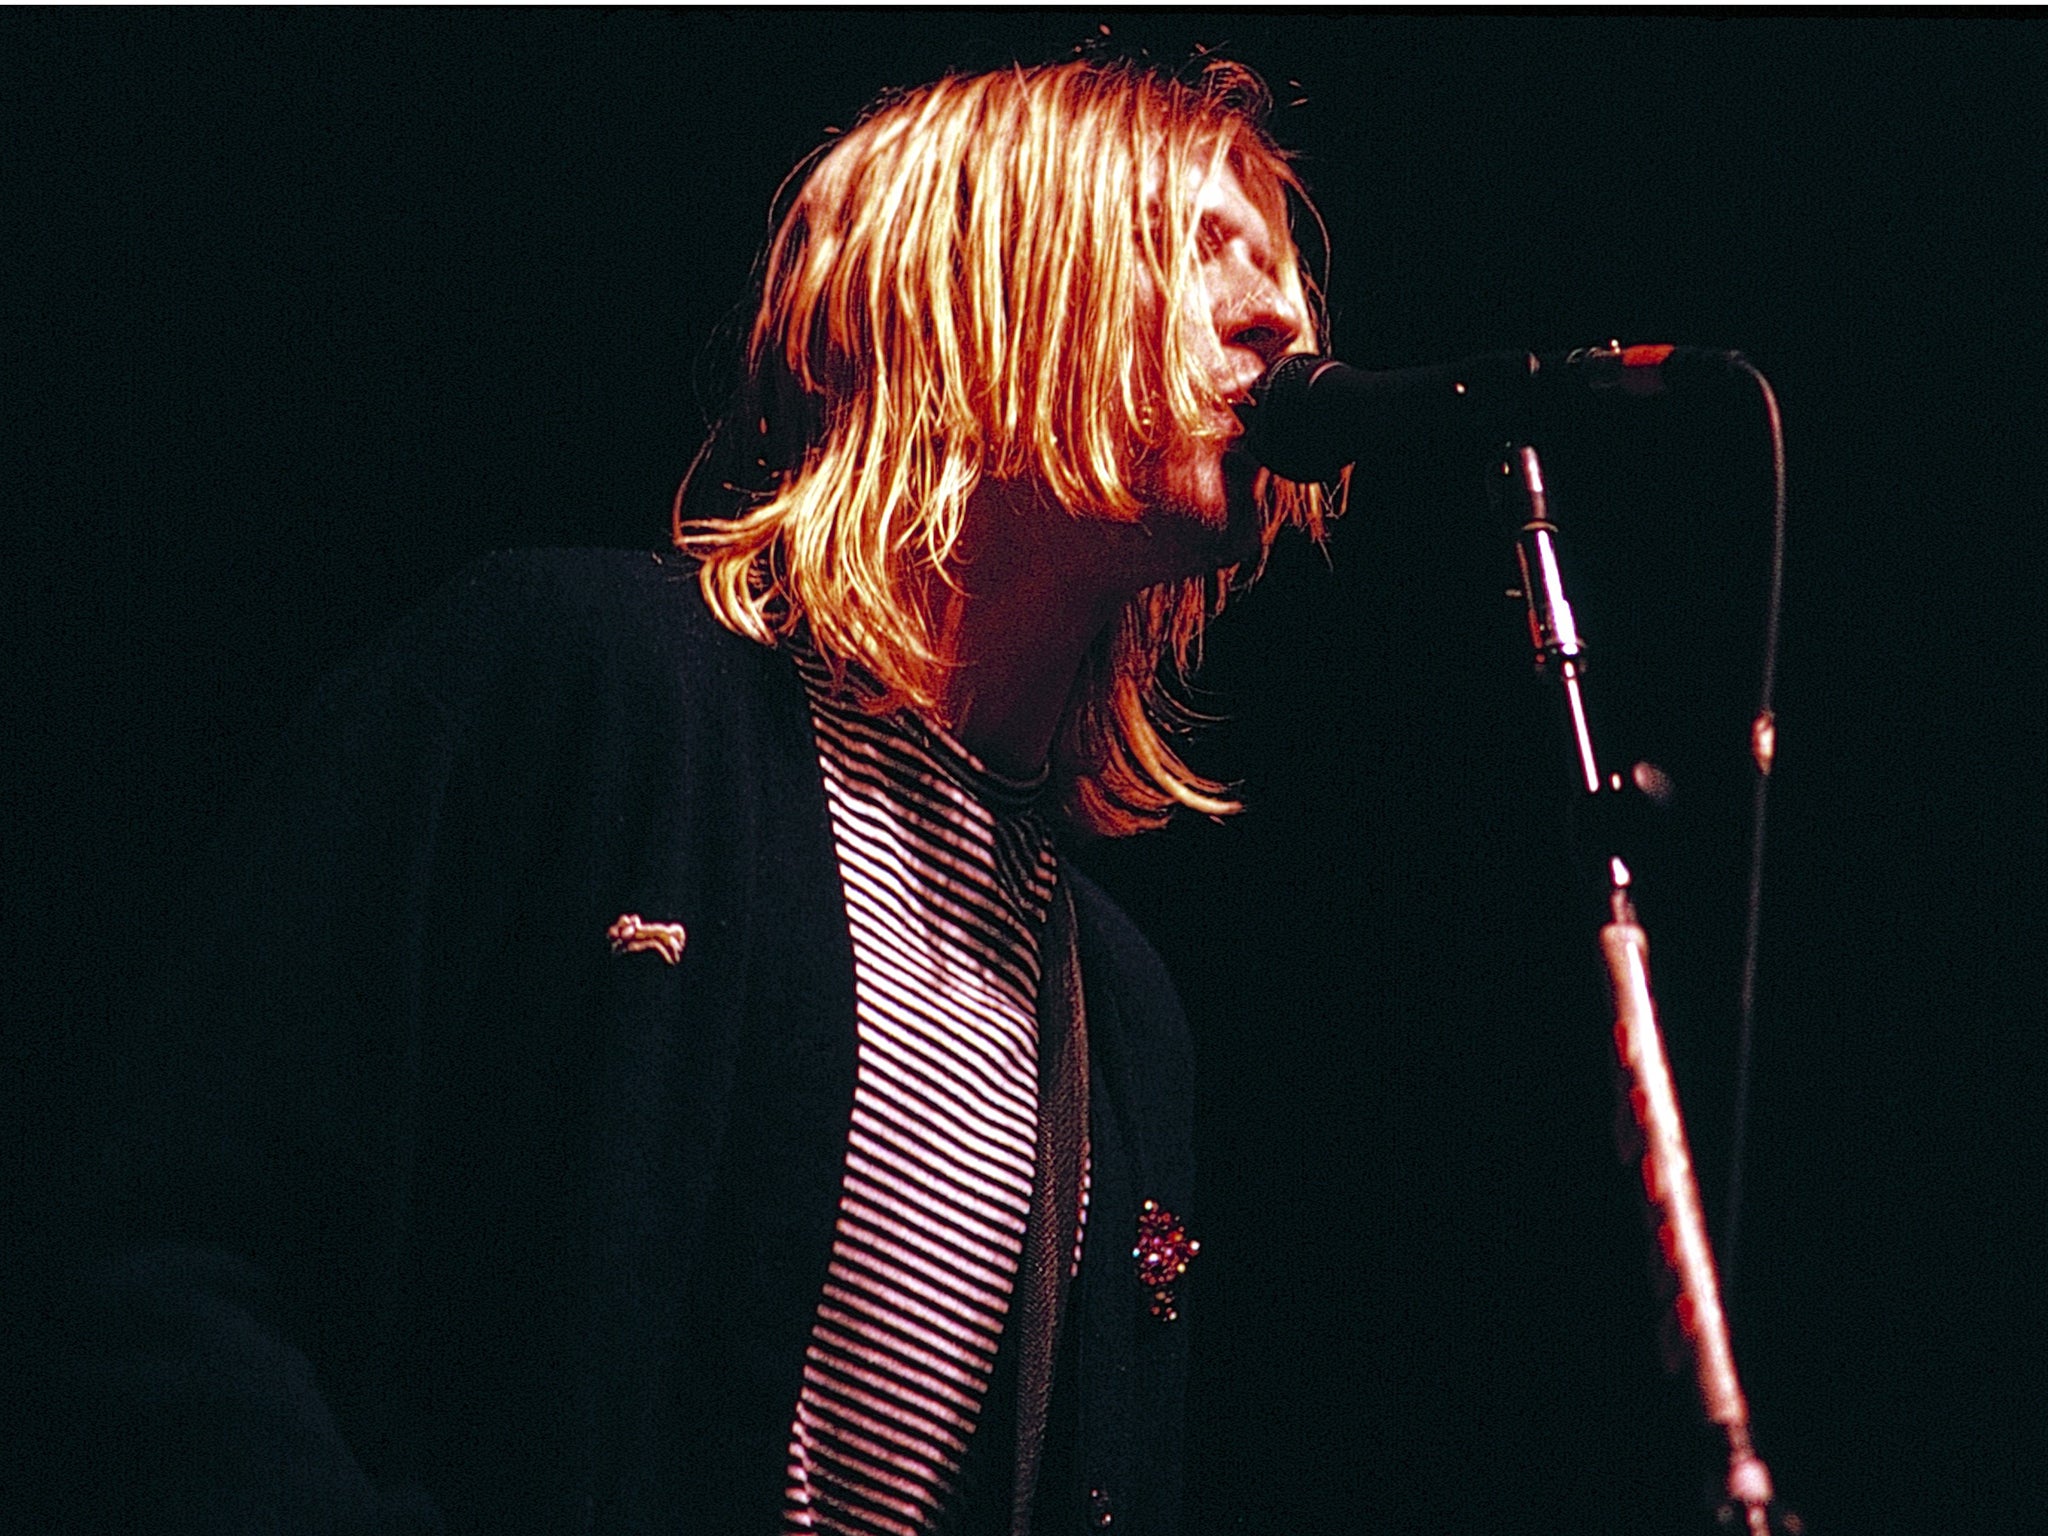 Nirvana leader Kurt Cobain was found dead in 1994